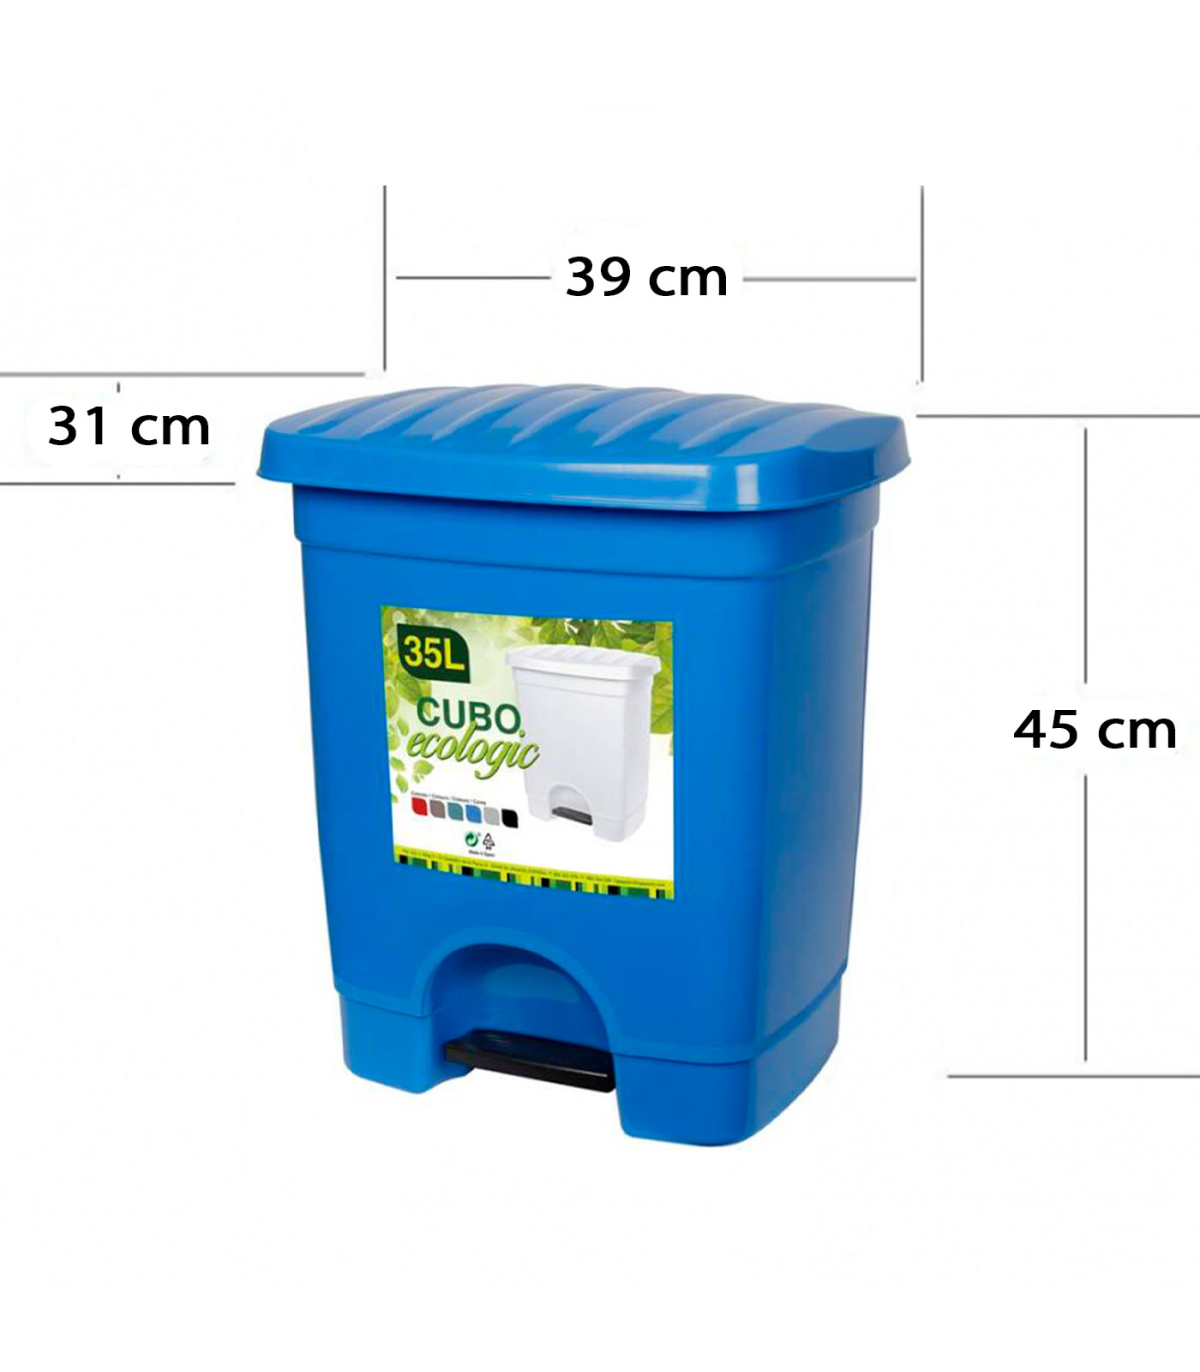 Tradineur - Cubo de basura de plástico, 7 litros, incluye tapa y asas  metálicas, contenedor de residuos, papelera, reciclaje, in